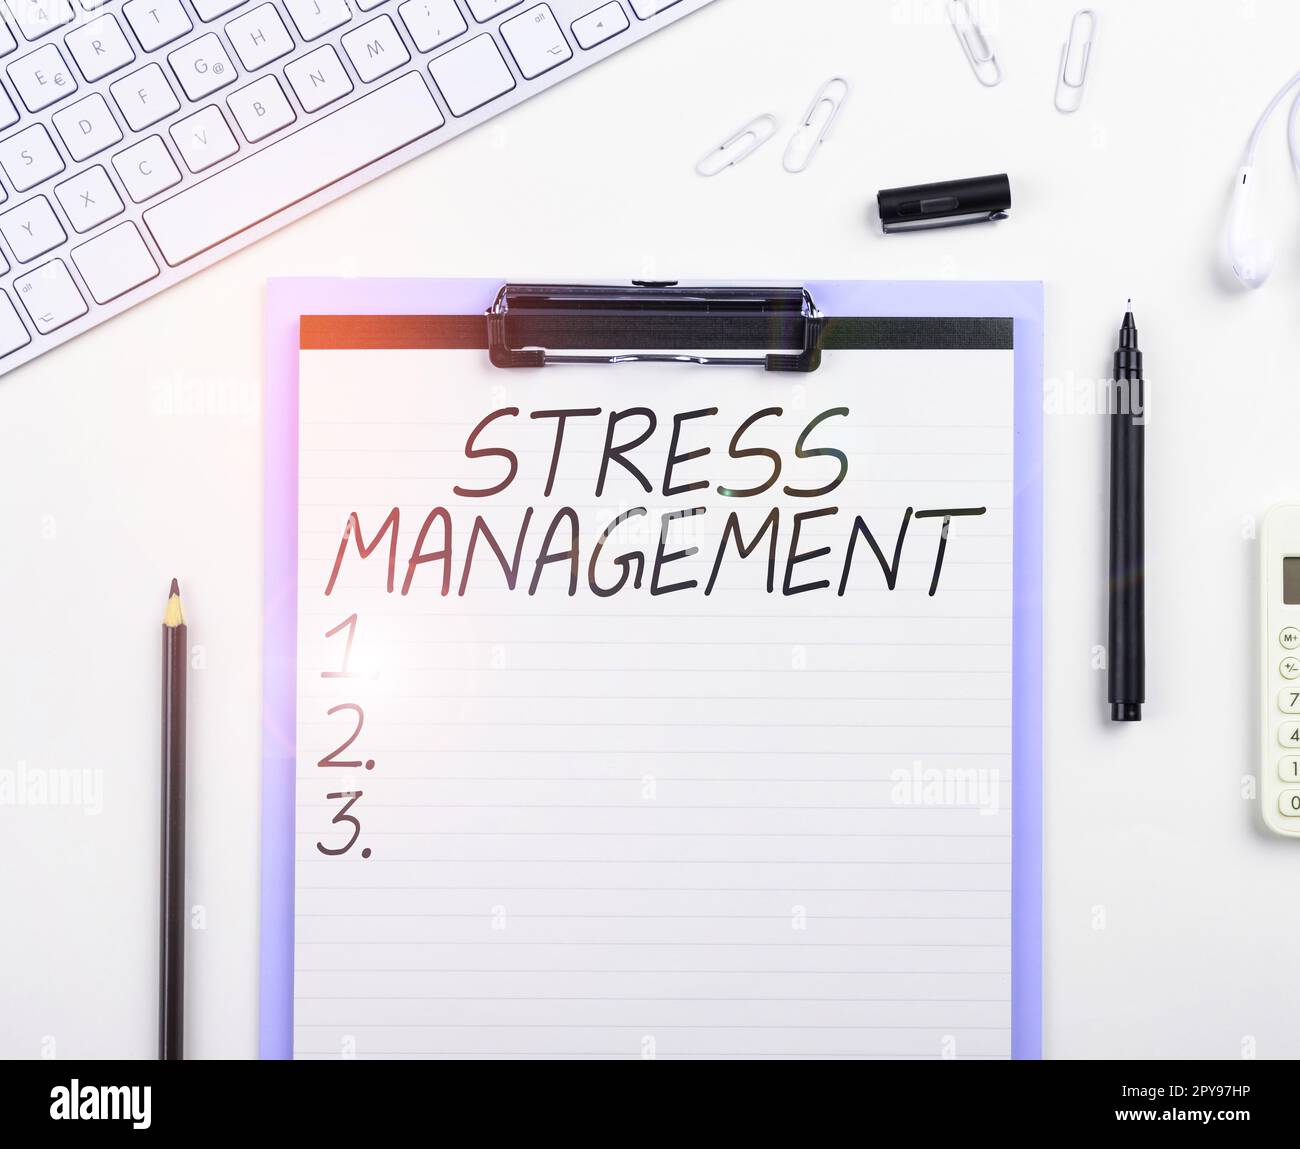 Testo che mostra la gestione dello stress inspiratorio. Business concept imparare modi di comportarsi e pensare che riducono lo stress Foto Stock